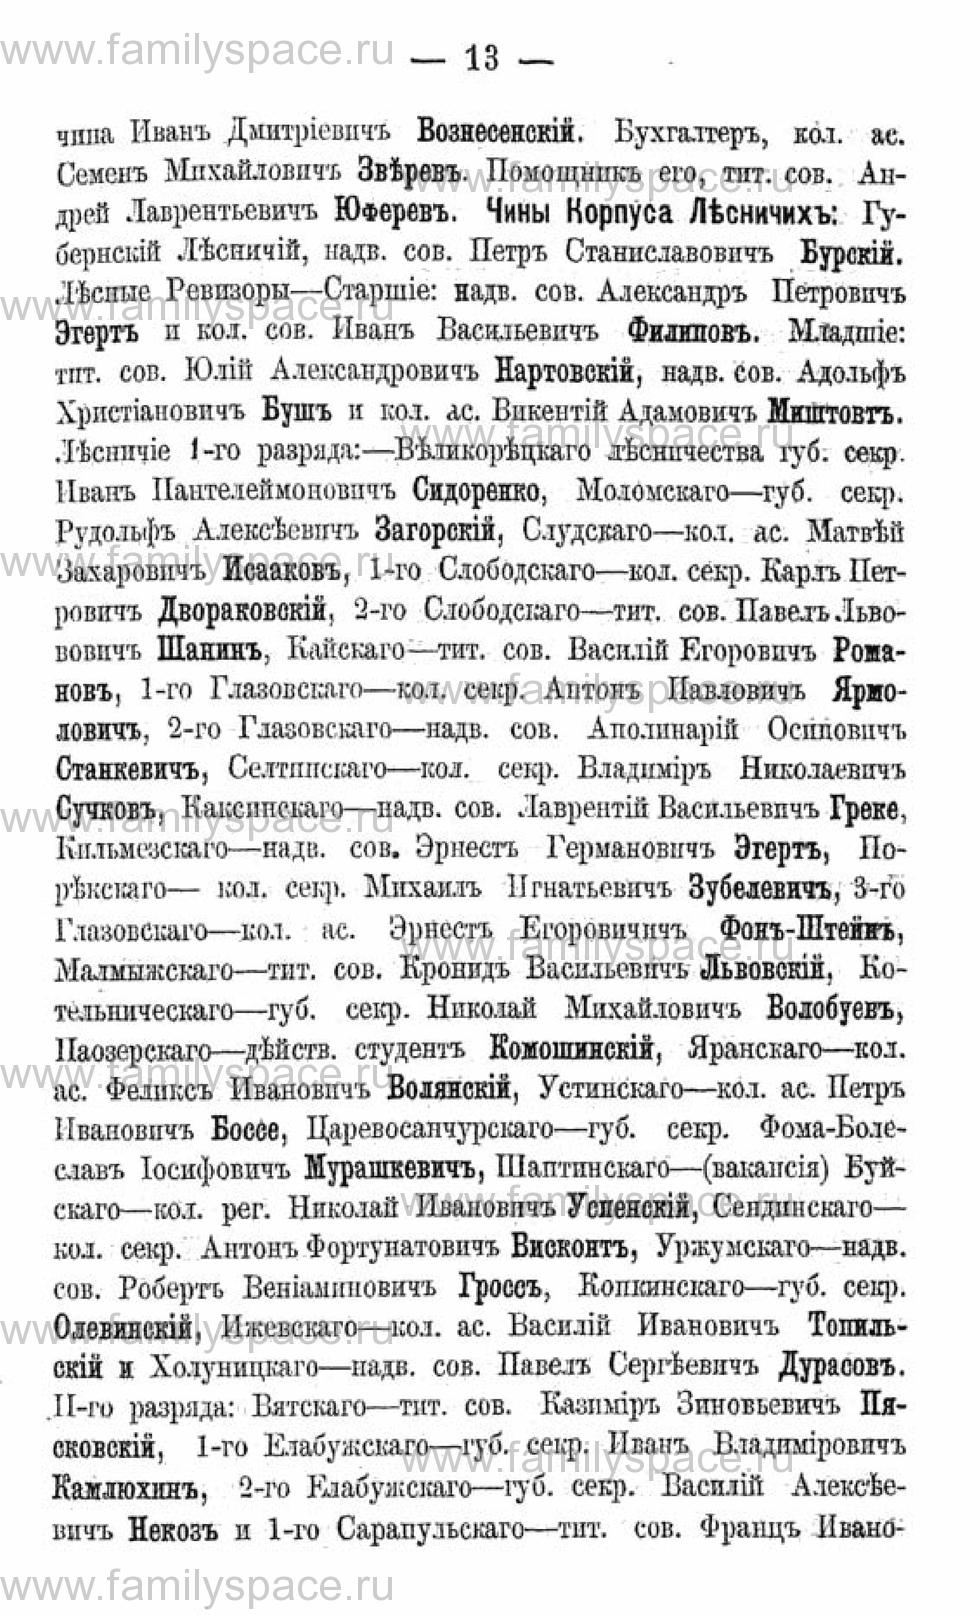 Поиск по фамилии - Календарь Вятской губернии - 1880, страница 3013